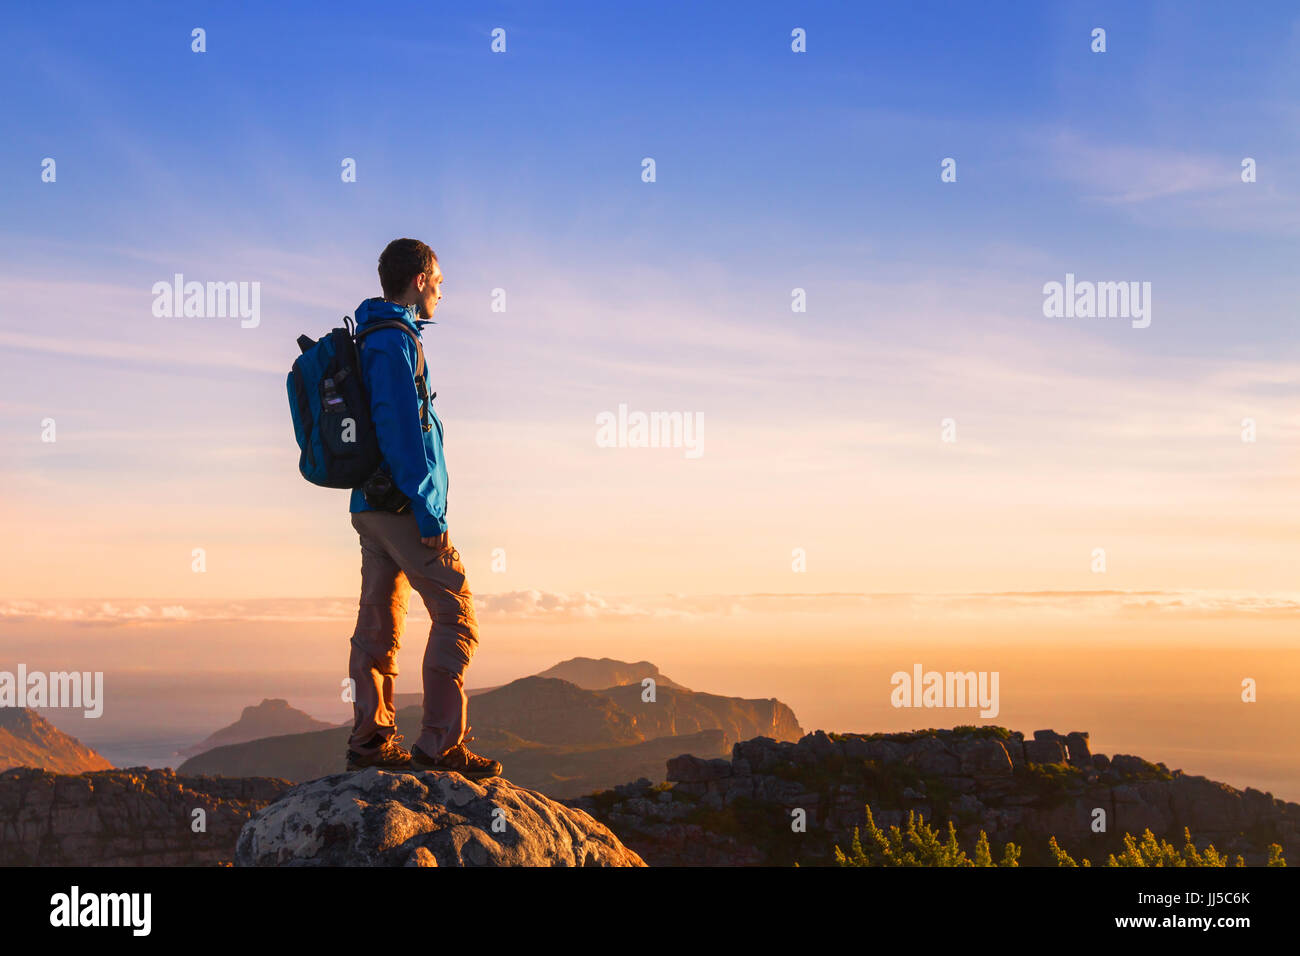 Randonneur sur sommet de la montagne bénéficiant d'une vue panoramique au coucher du soleil avec copyspace Banque D'Images